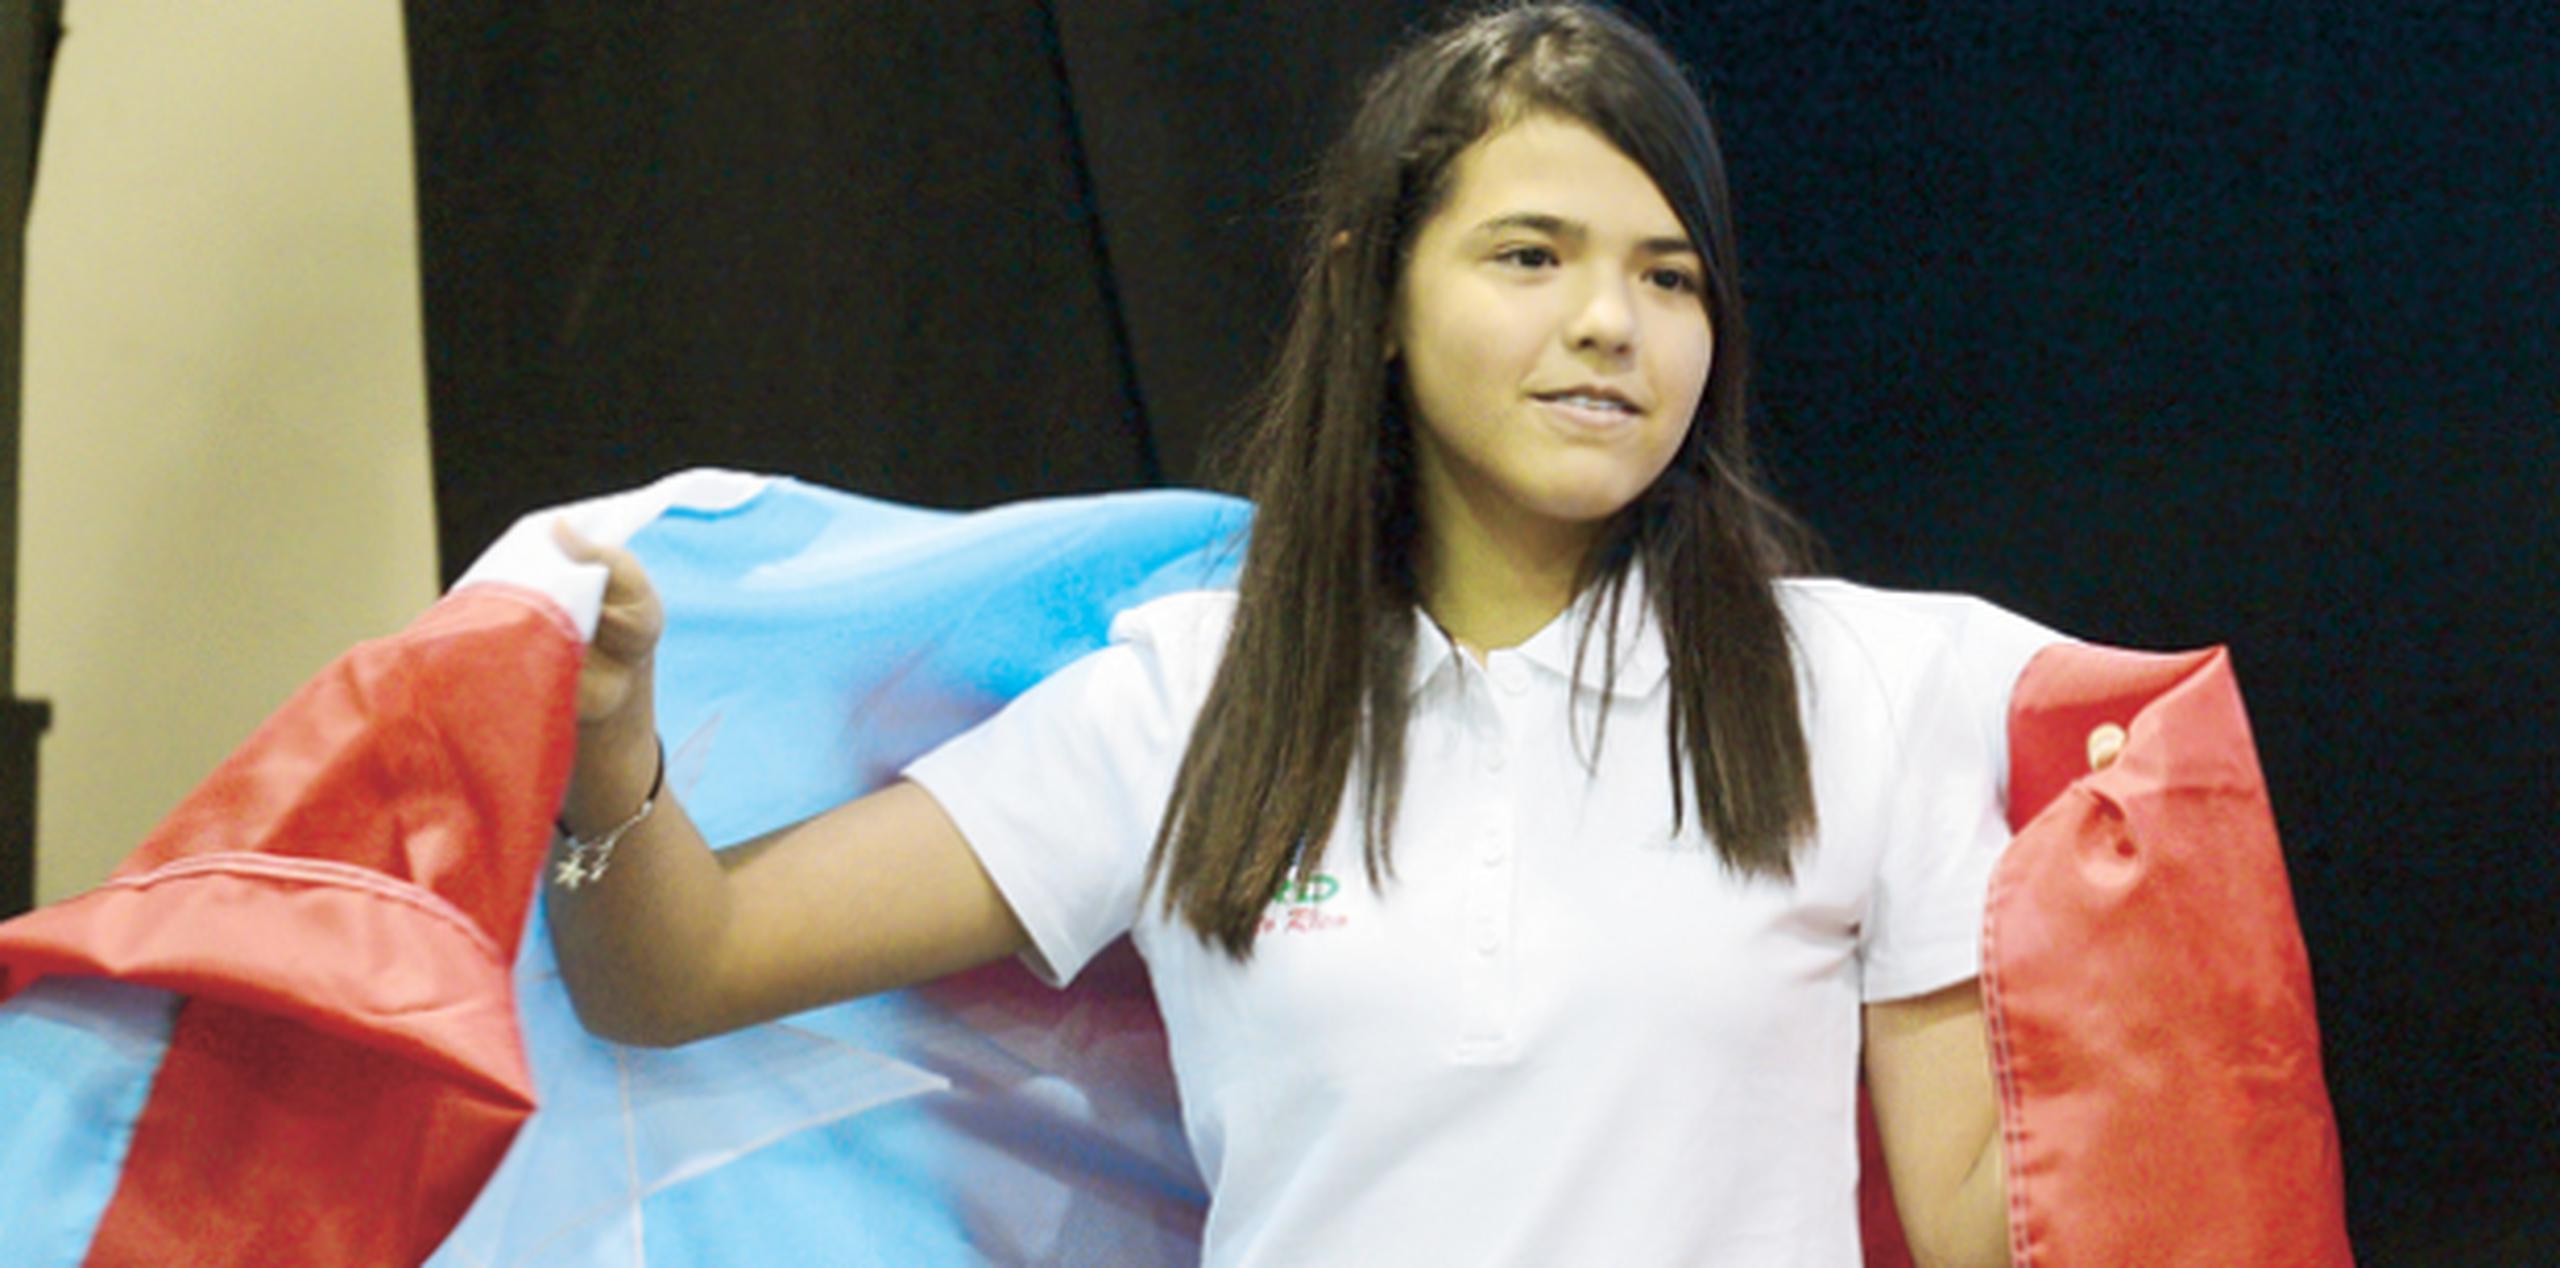 Adriana Díaz iría a la competencia, pero por decisión de algunas jugadoras y sus padres se decidió no acudir al torneo. (Archivo)